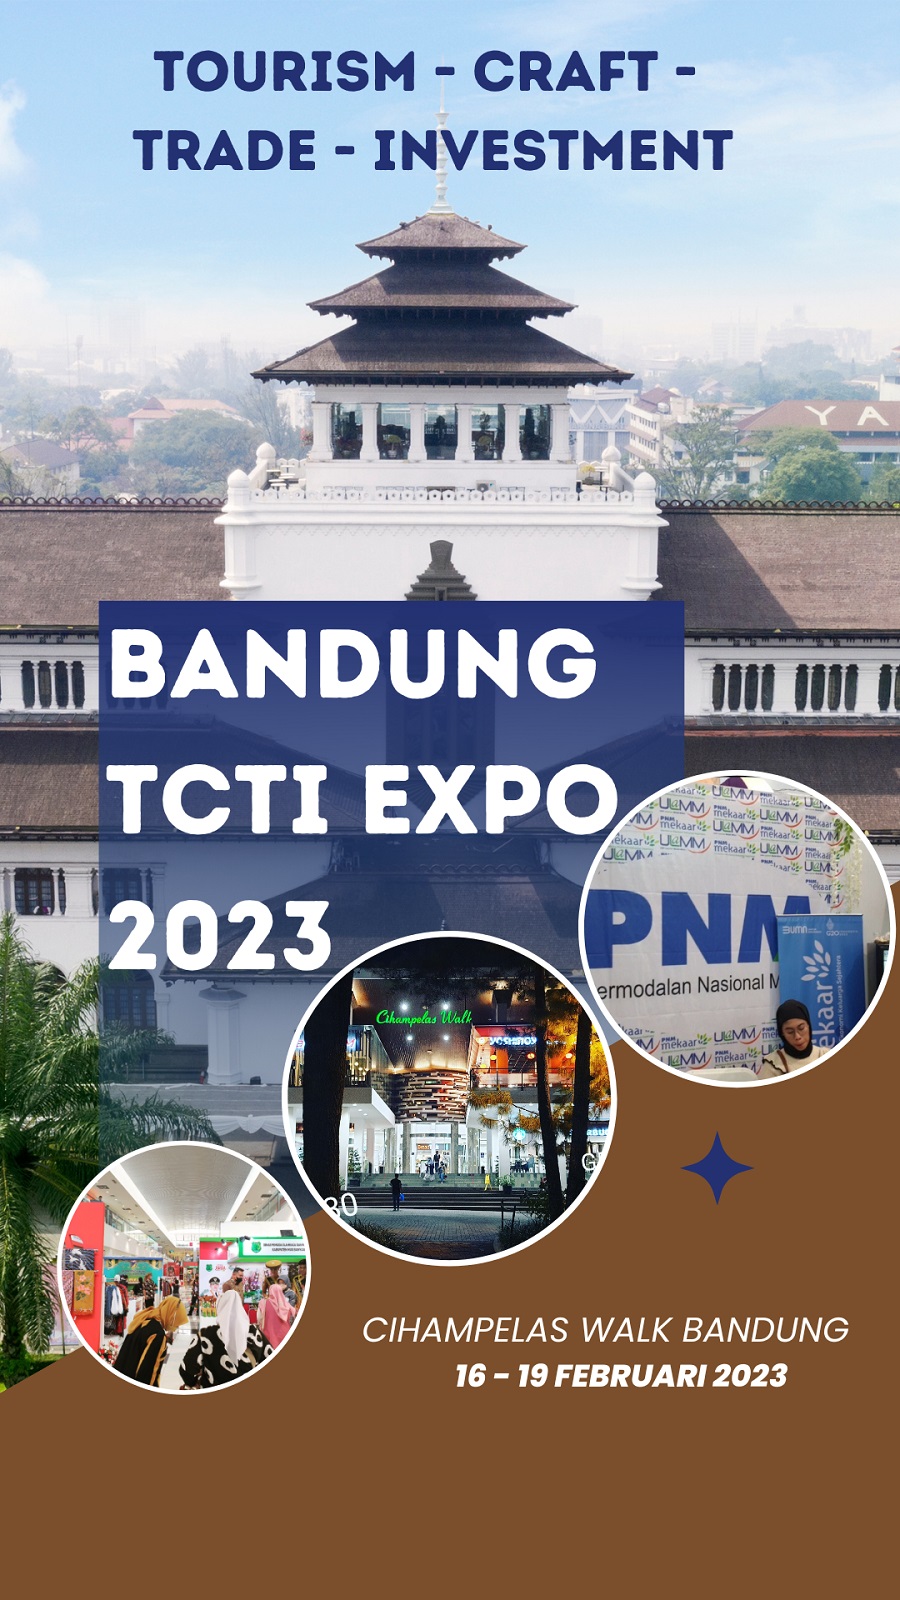 BANDUNG TOURISM, CRAFT, TRADE & INVESTMENT EXPO 2023 (BANDUNG TCTI 2023)